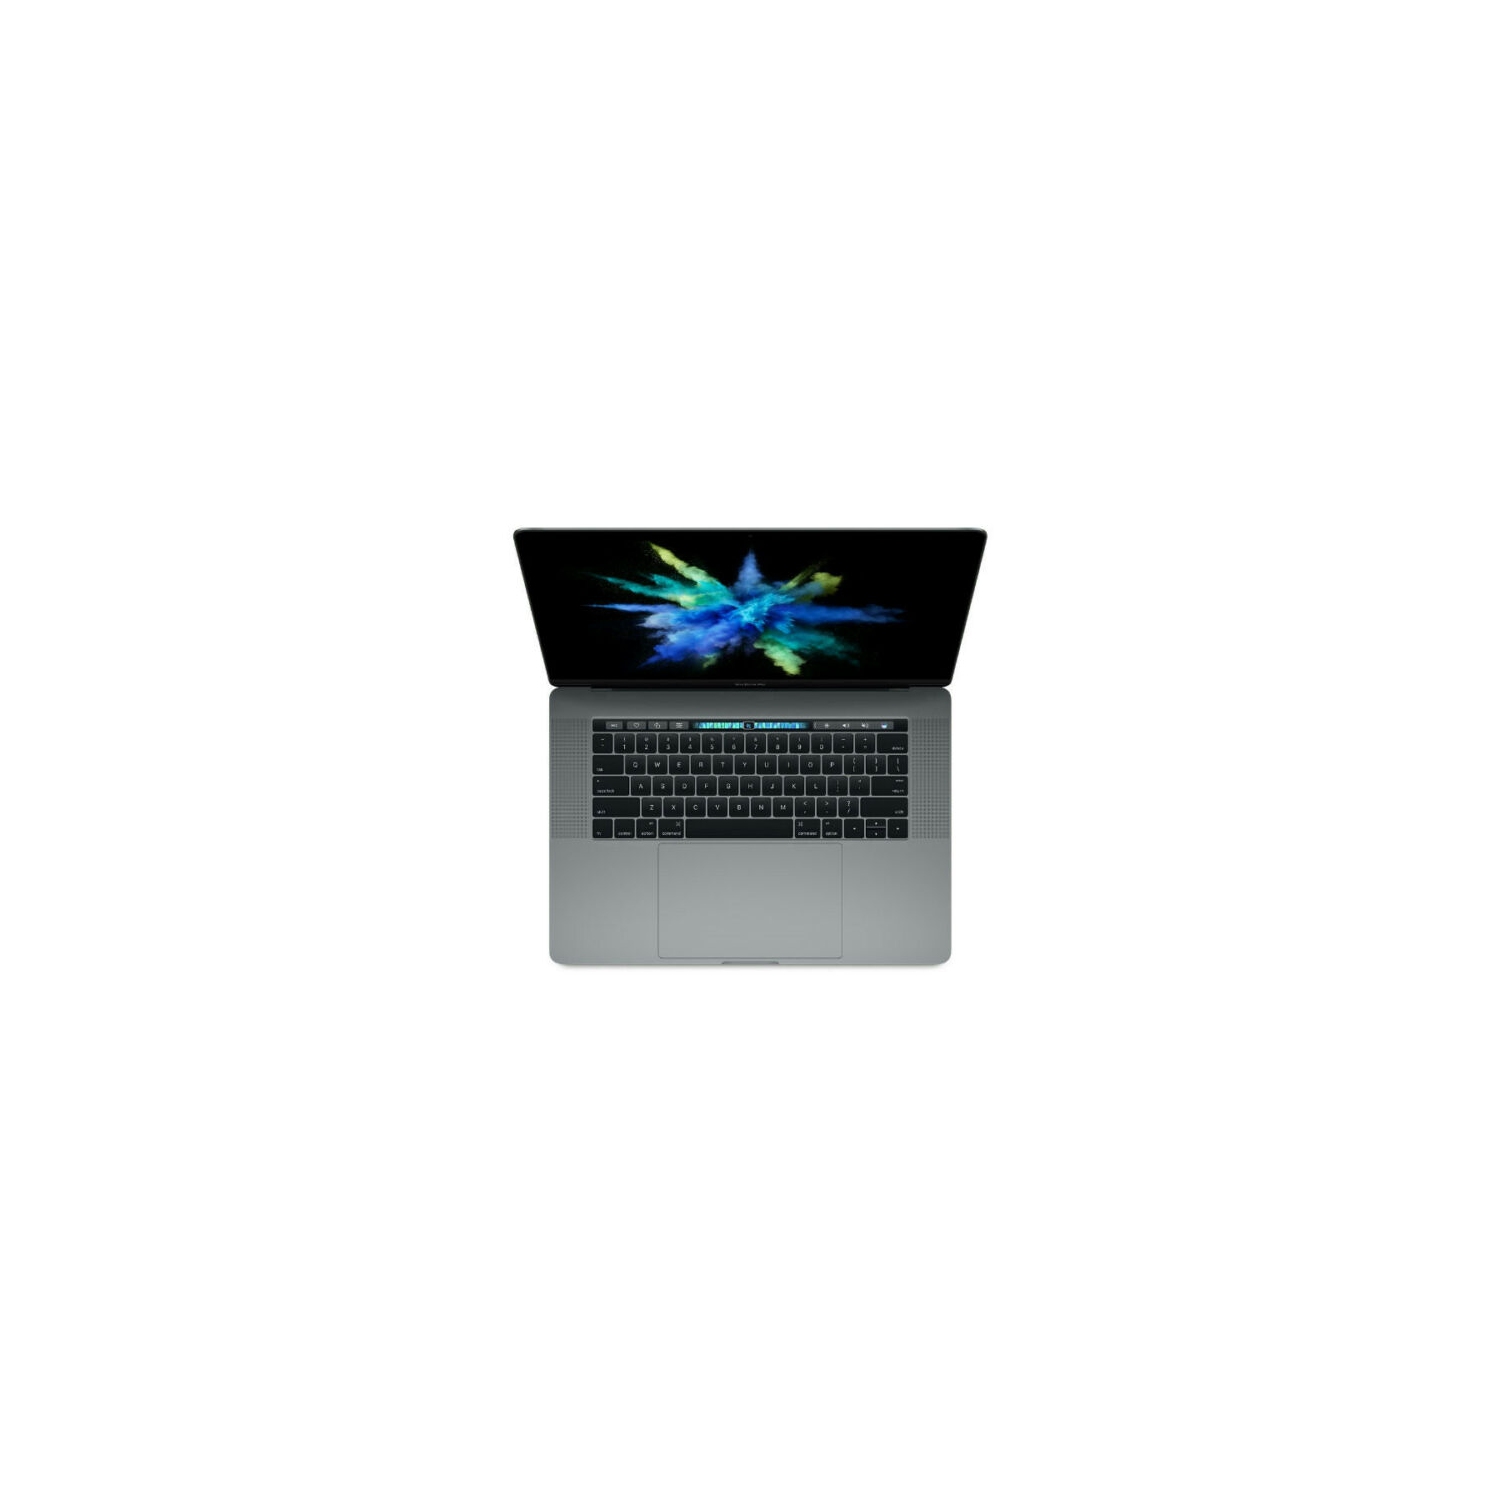 Refurbished (Excellent) - Apple MacBook Pro 15" Touchbar - Intel Core i7 2.9GHz - 16GB RAM - 512GB SSD - A1707 - Mid-2017 (MPTT2LL/A)